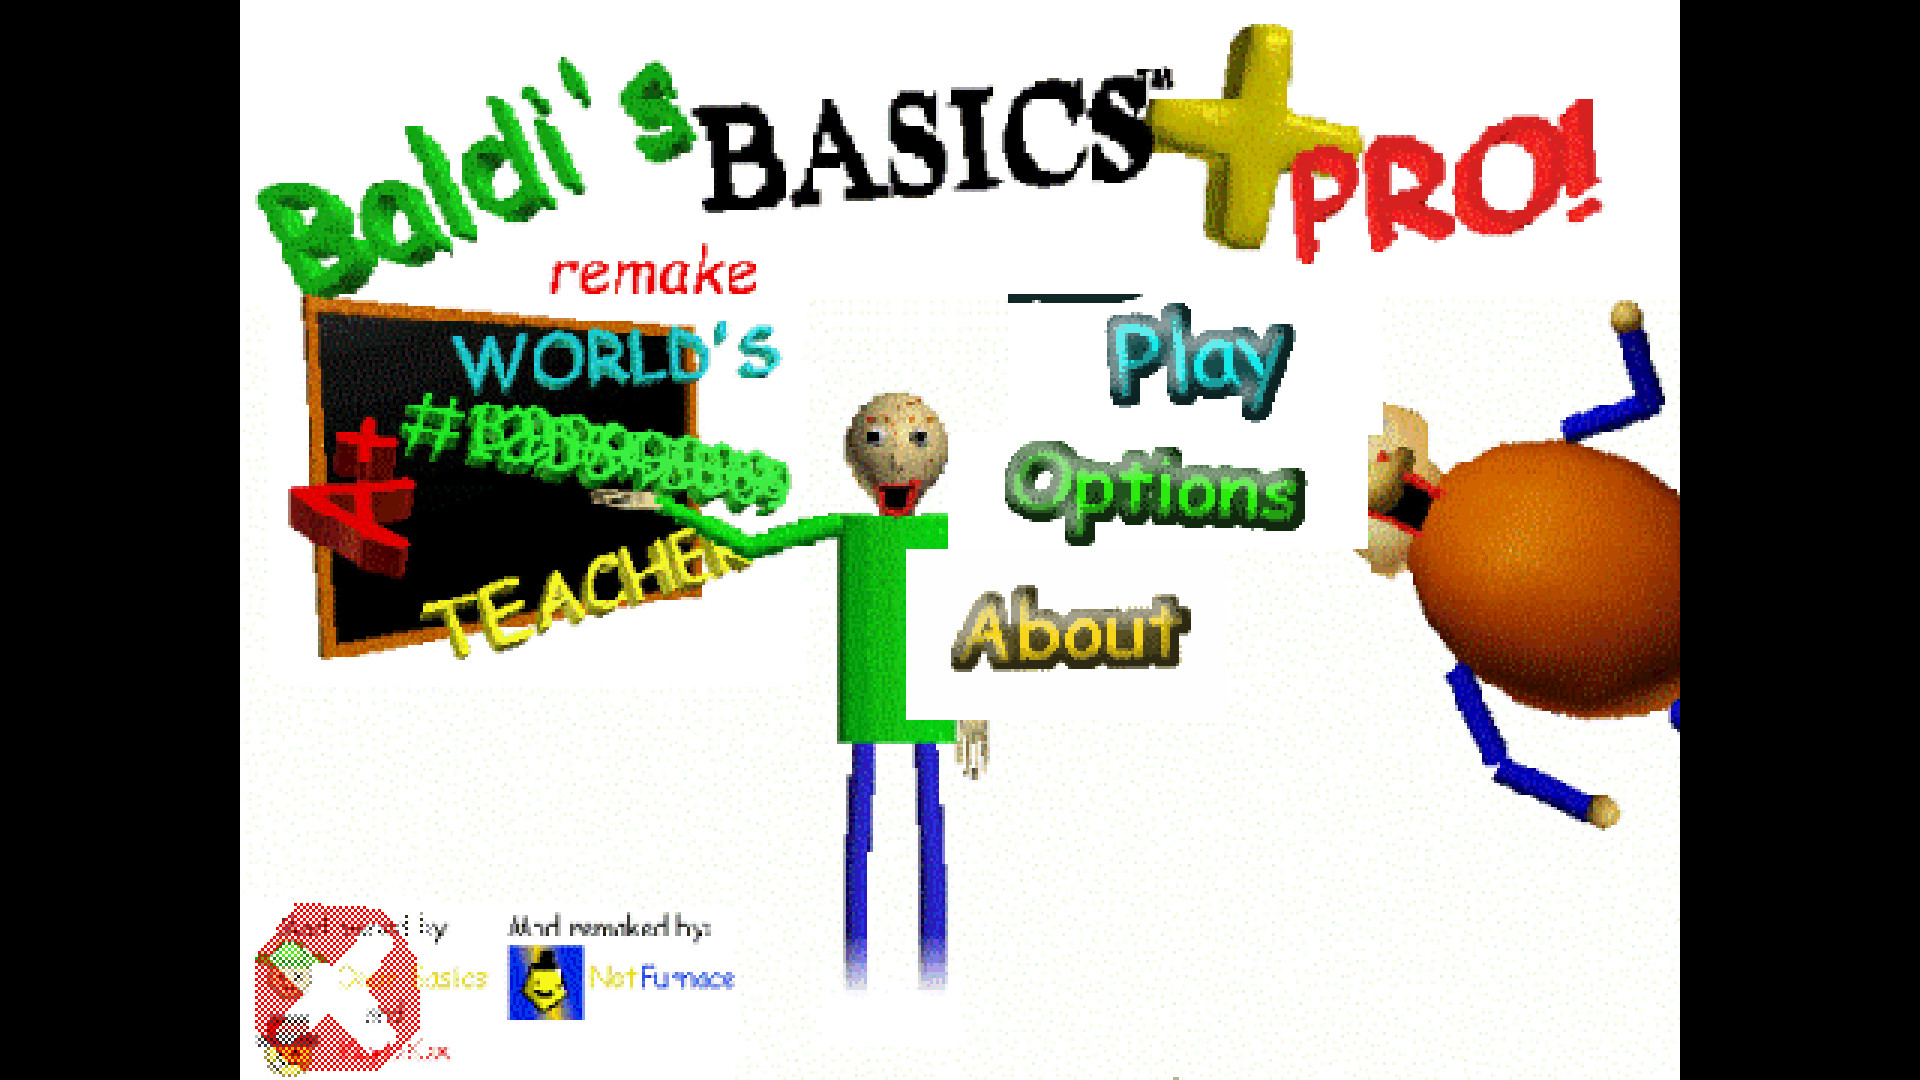 Baldi's Basics Plus. Baldi's Basics Plus v0.4. Baldis Basics Plus 0.4. Baldi's Basics Plus - Seed 99. Baldis basics game public demo